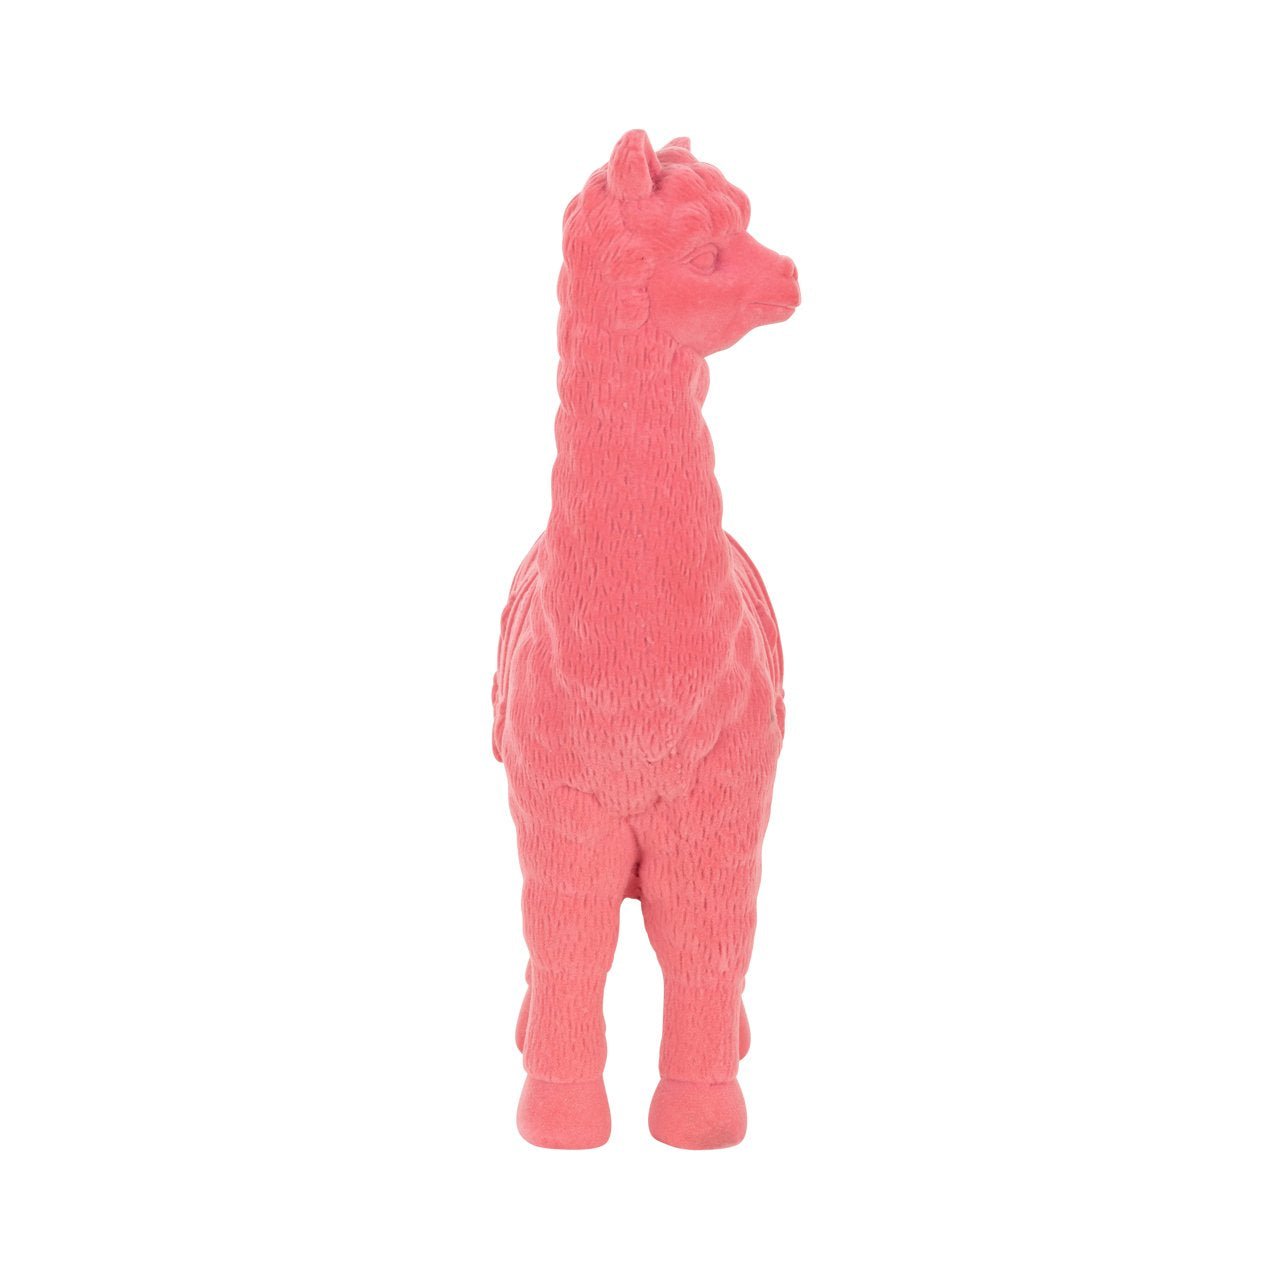 Vooraanzicht van het Richmond interiors roze alpaca beeldje als deco object